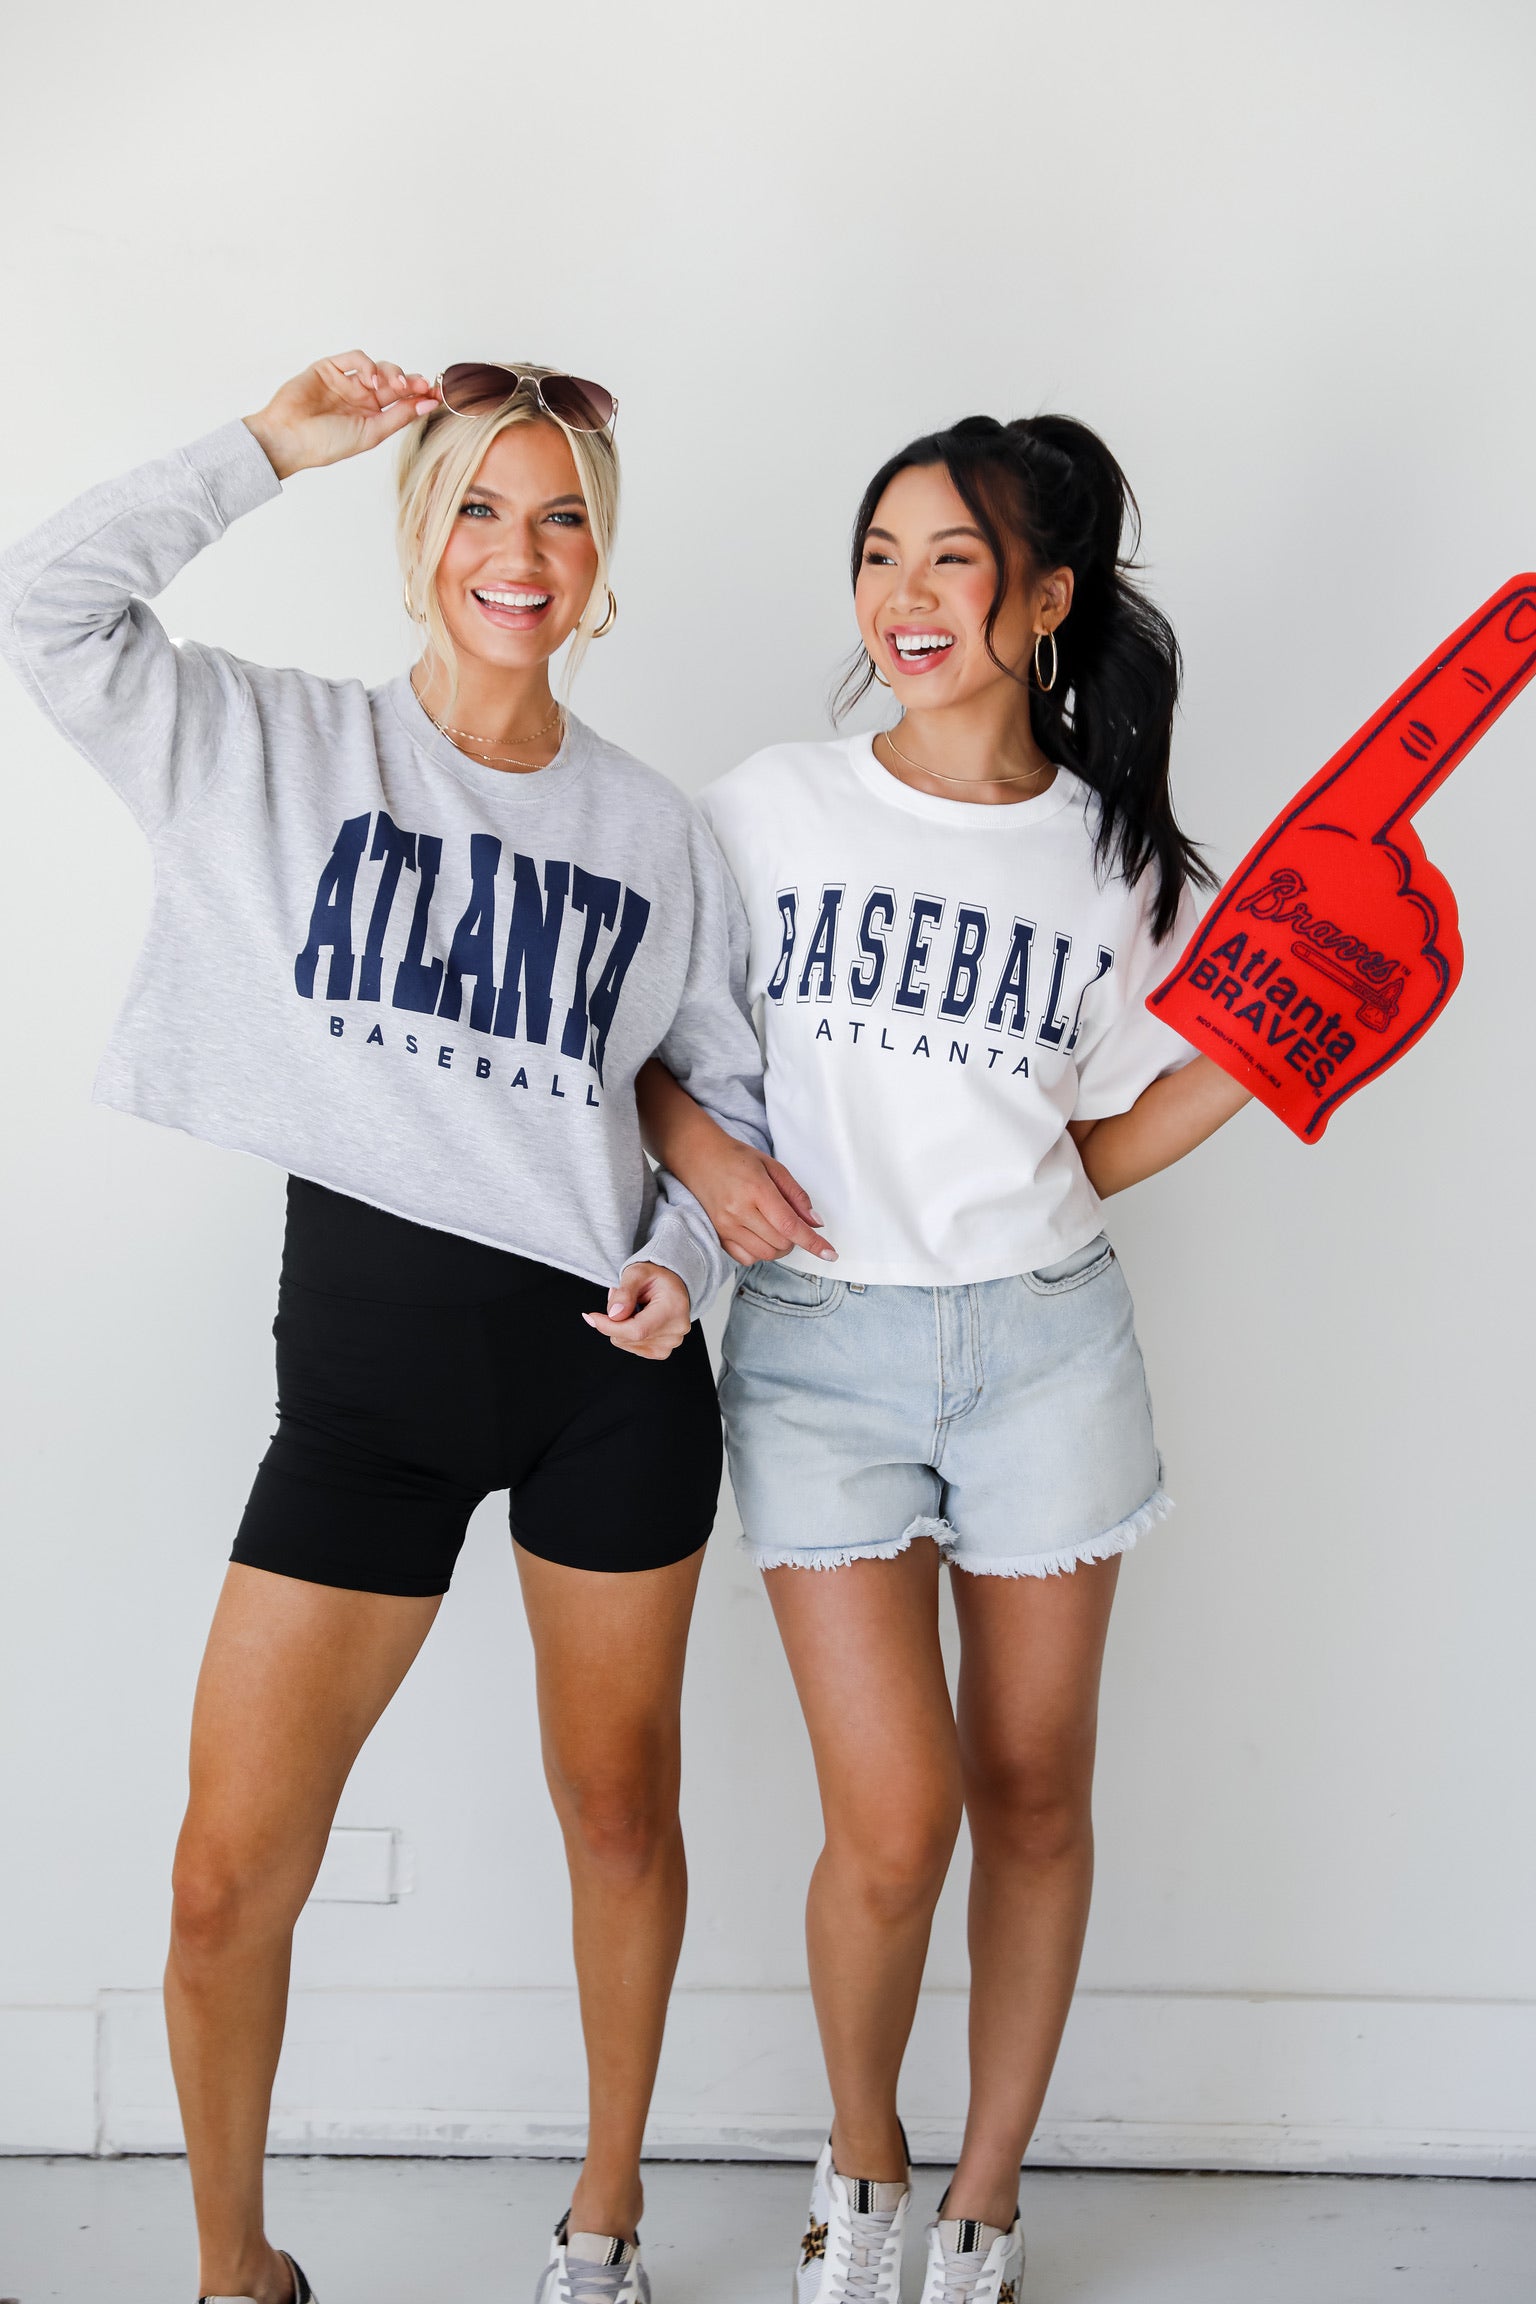 Atlanta braves baseball gameday outfit  Atlanta braves outfit, Gaming  clothes, Braves game outfit